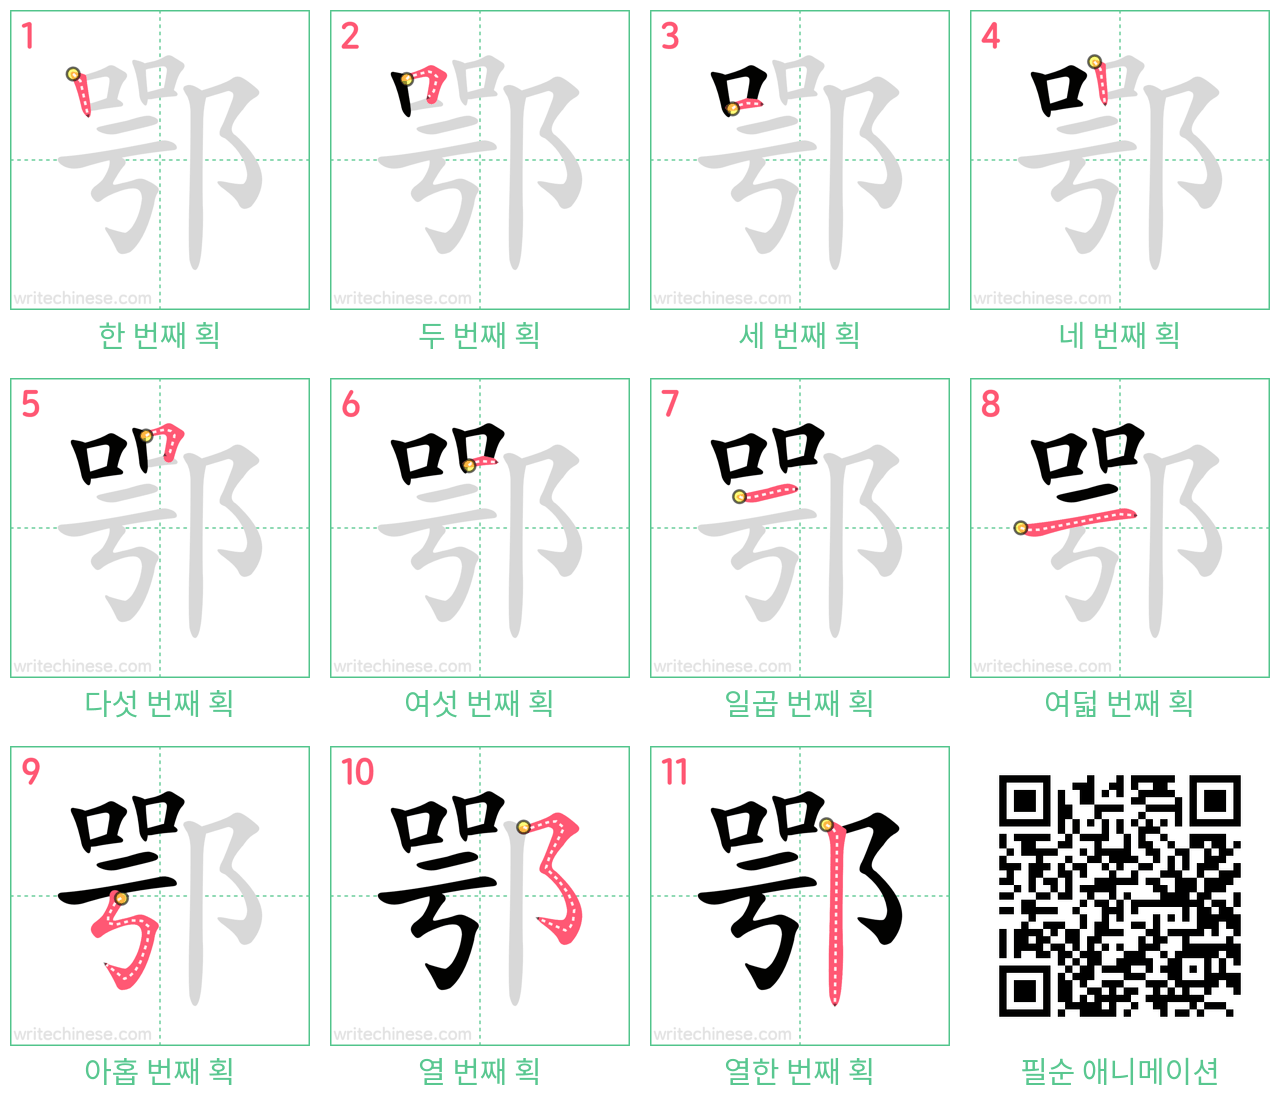 鄂 step-by-step stroke order diagrams